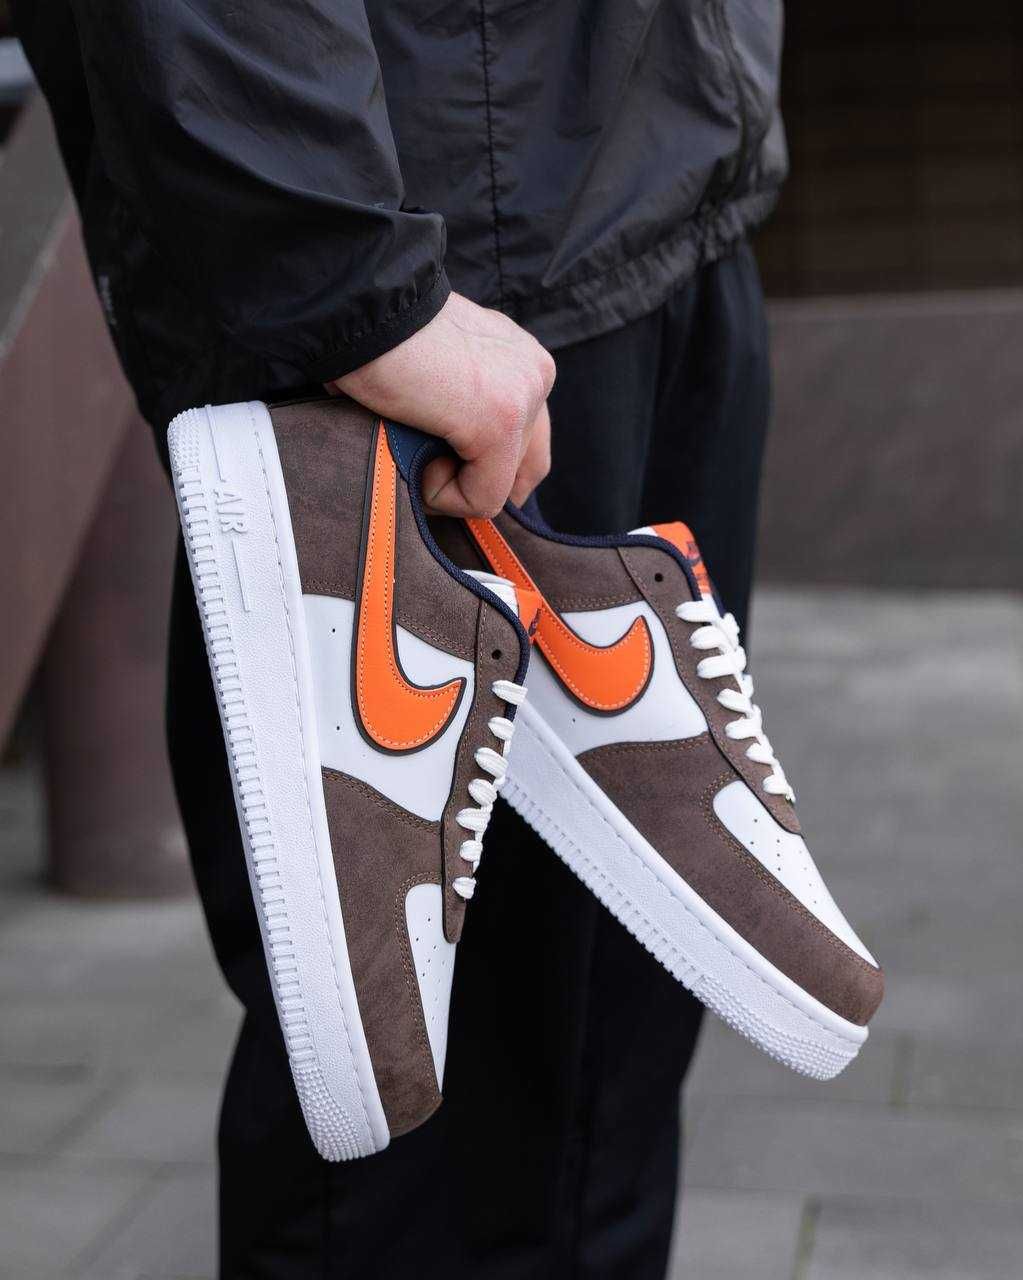 Чоловічі кросівки Найк/Nike Air Force Brown White Orange 40-44 розміри